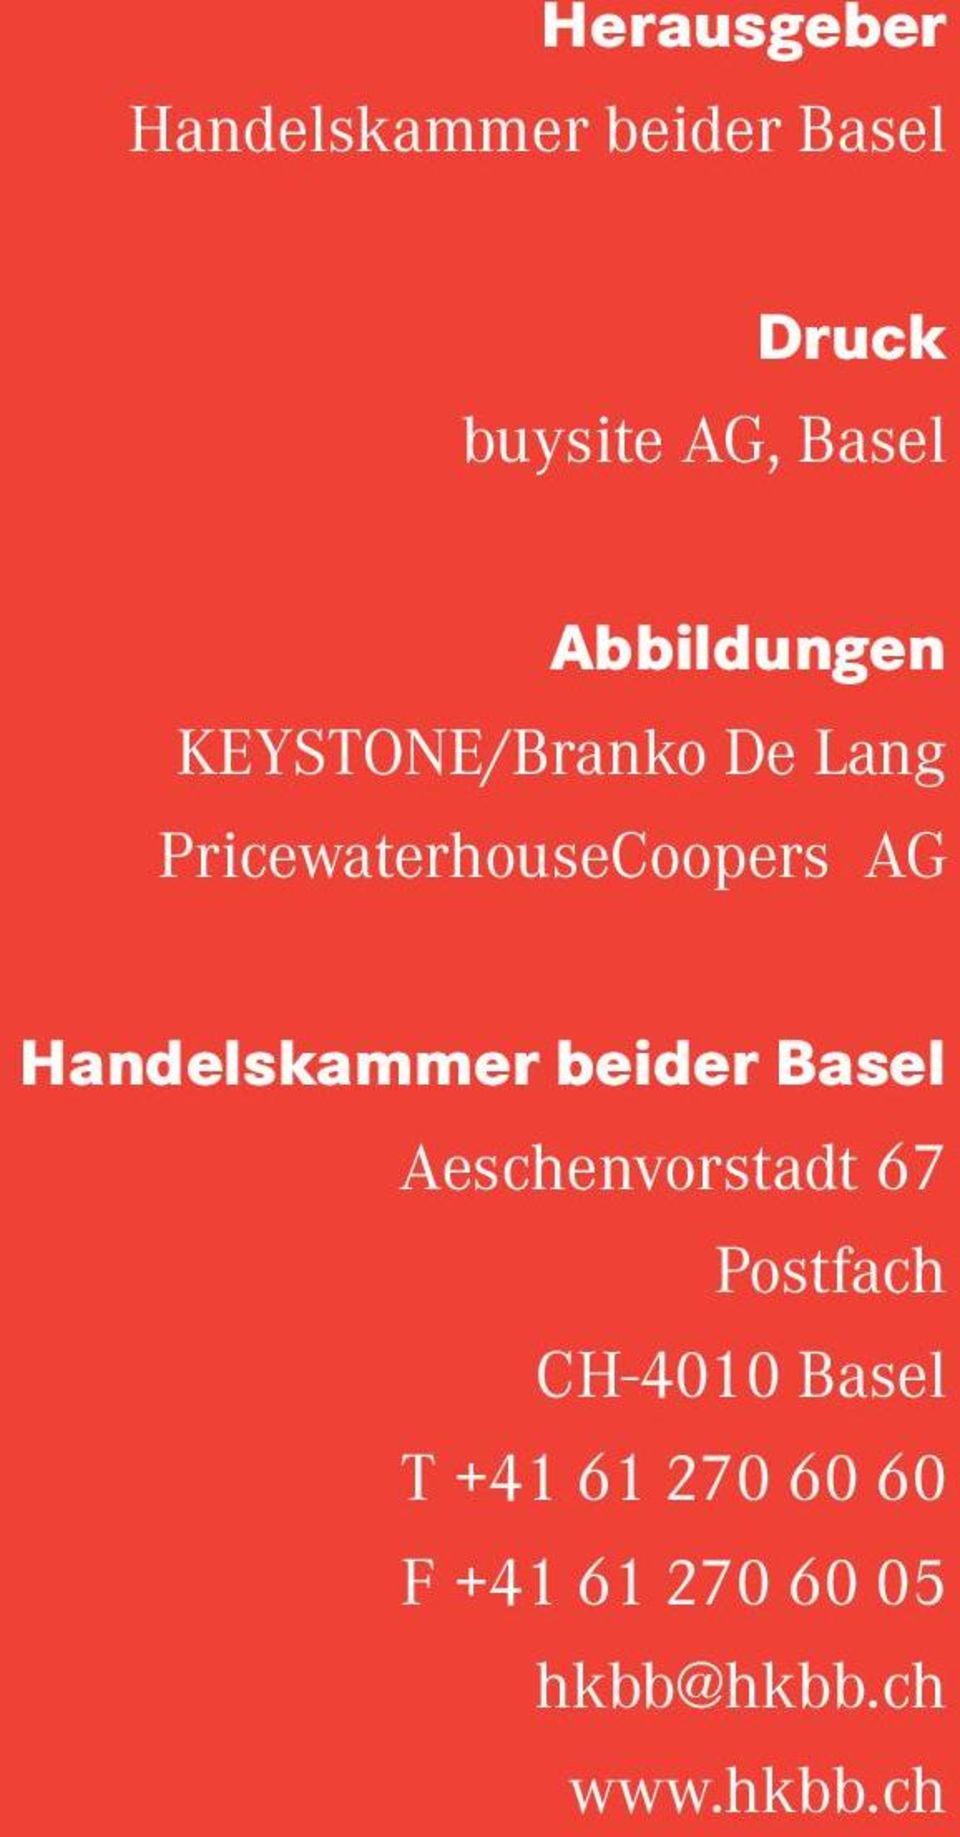 Handelskammer beider Basel Aeschenvorstadt 67 Postfach CH-4010